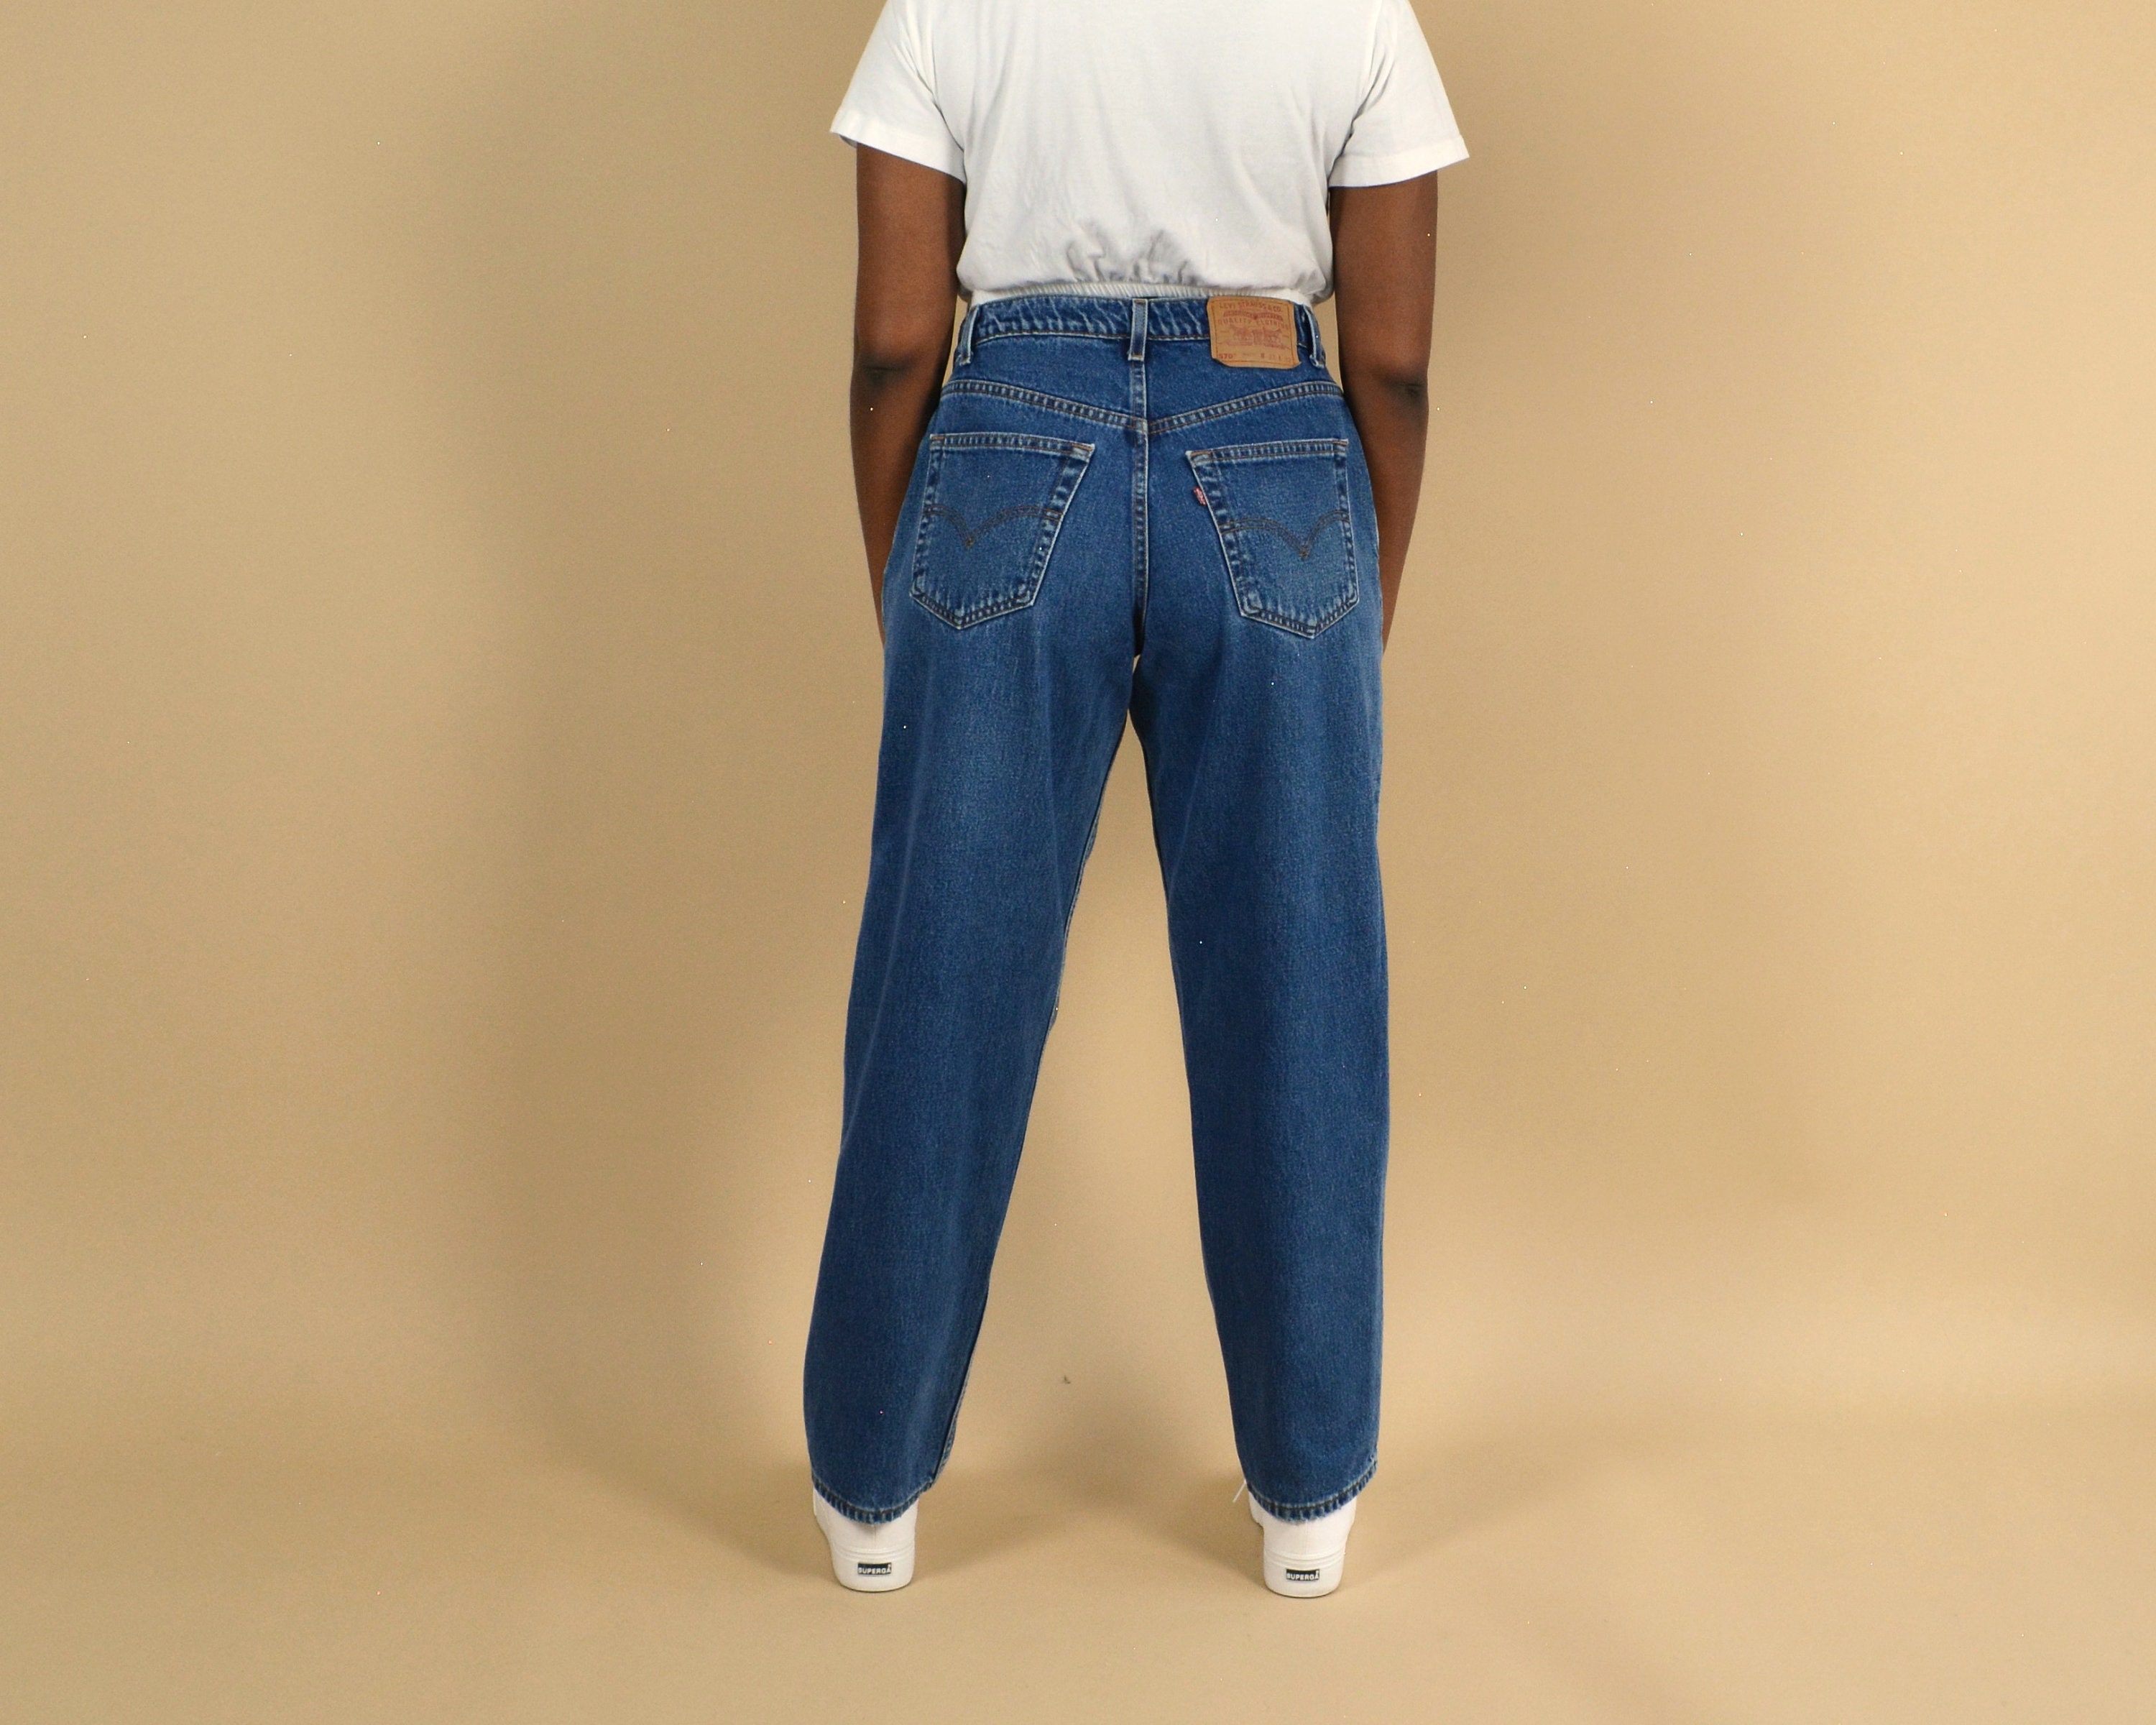 570 Baggy Fit 32 Vintage Jeans - Etsy México